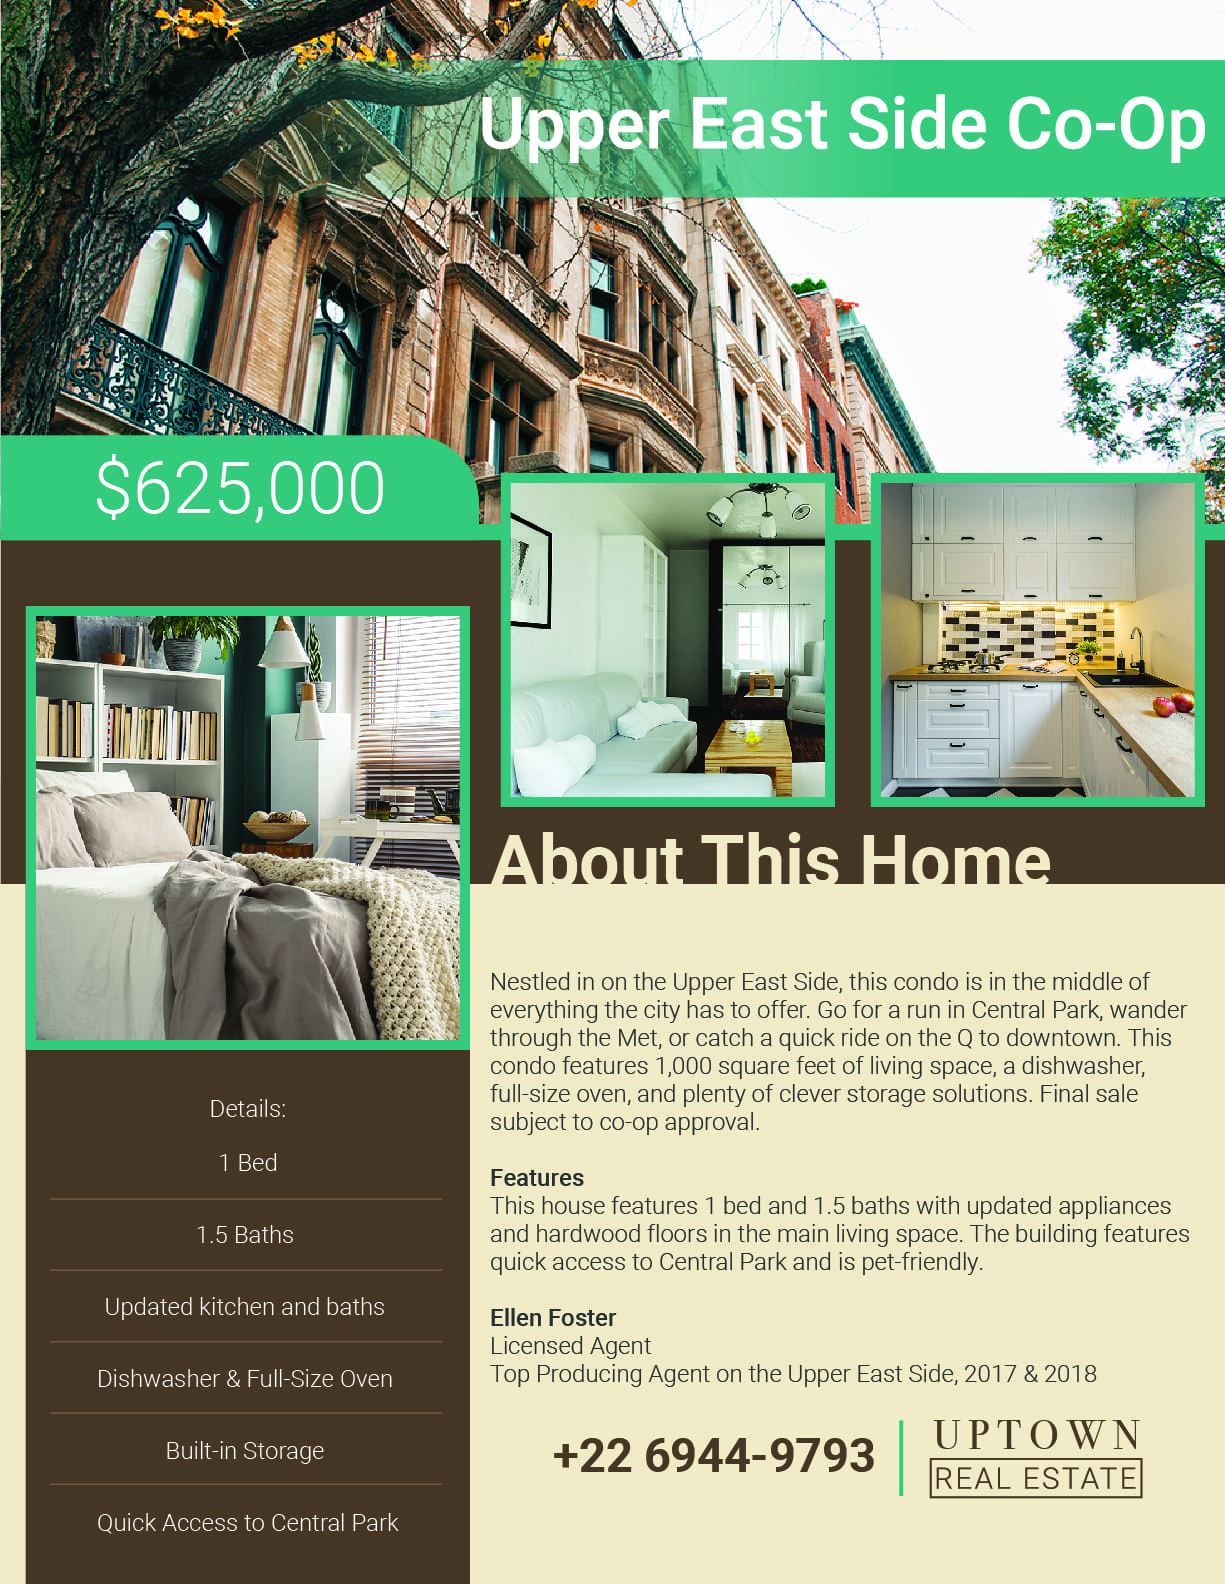 Manhattan brownstone real estate flyer